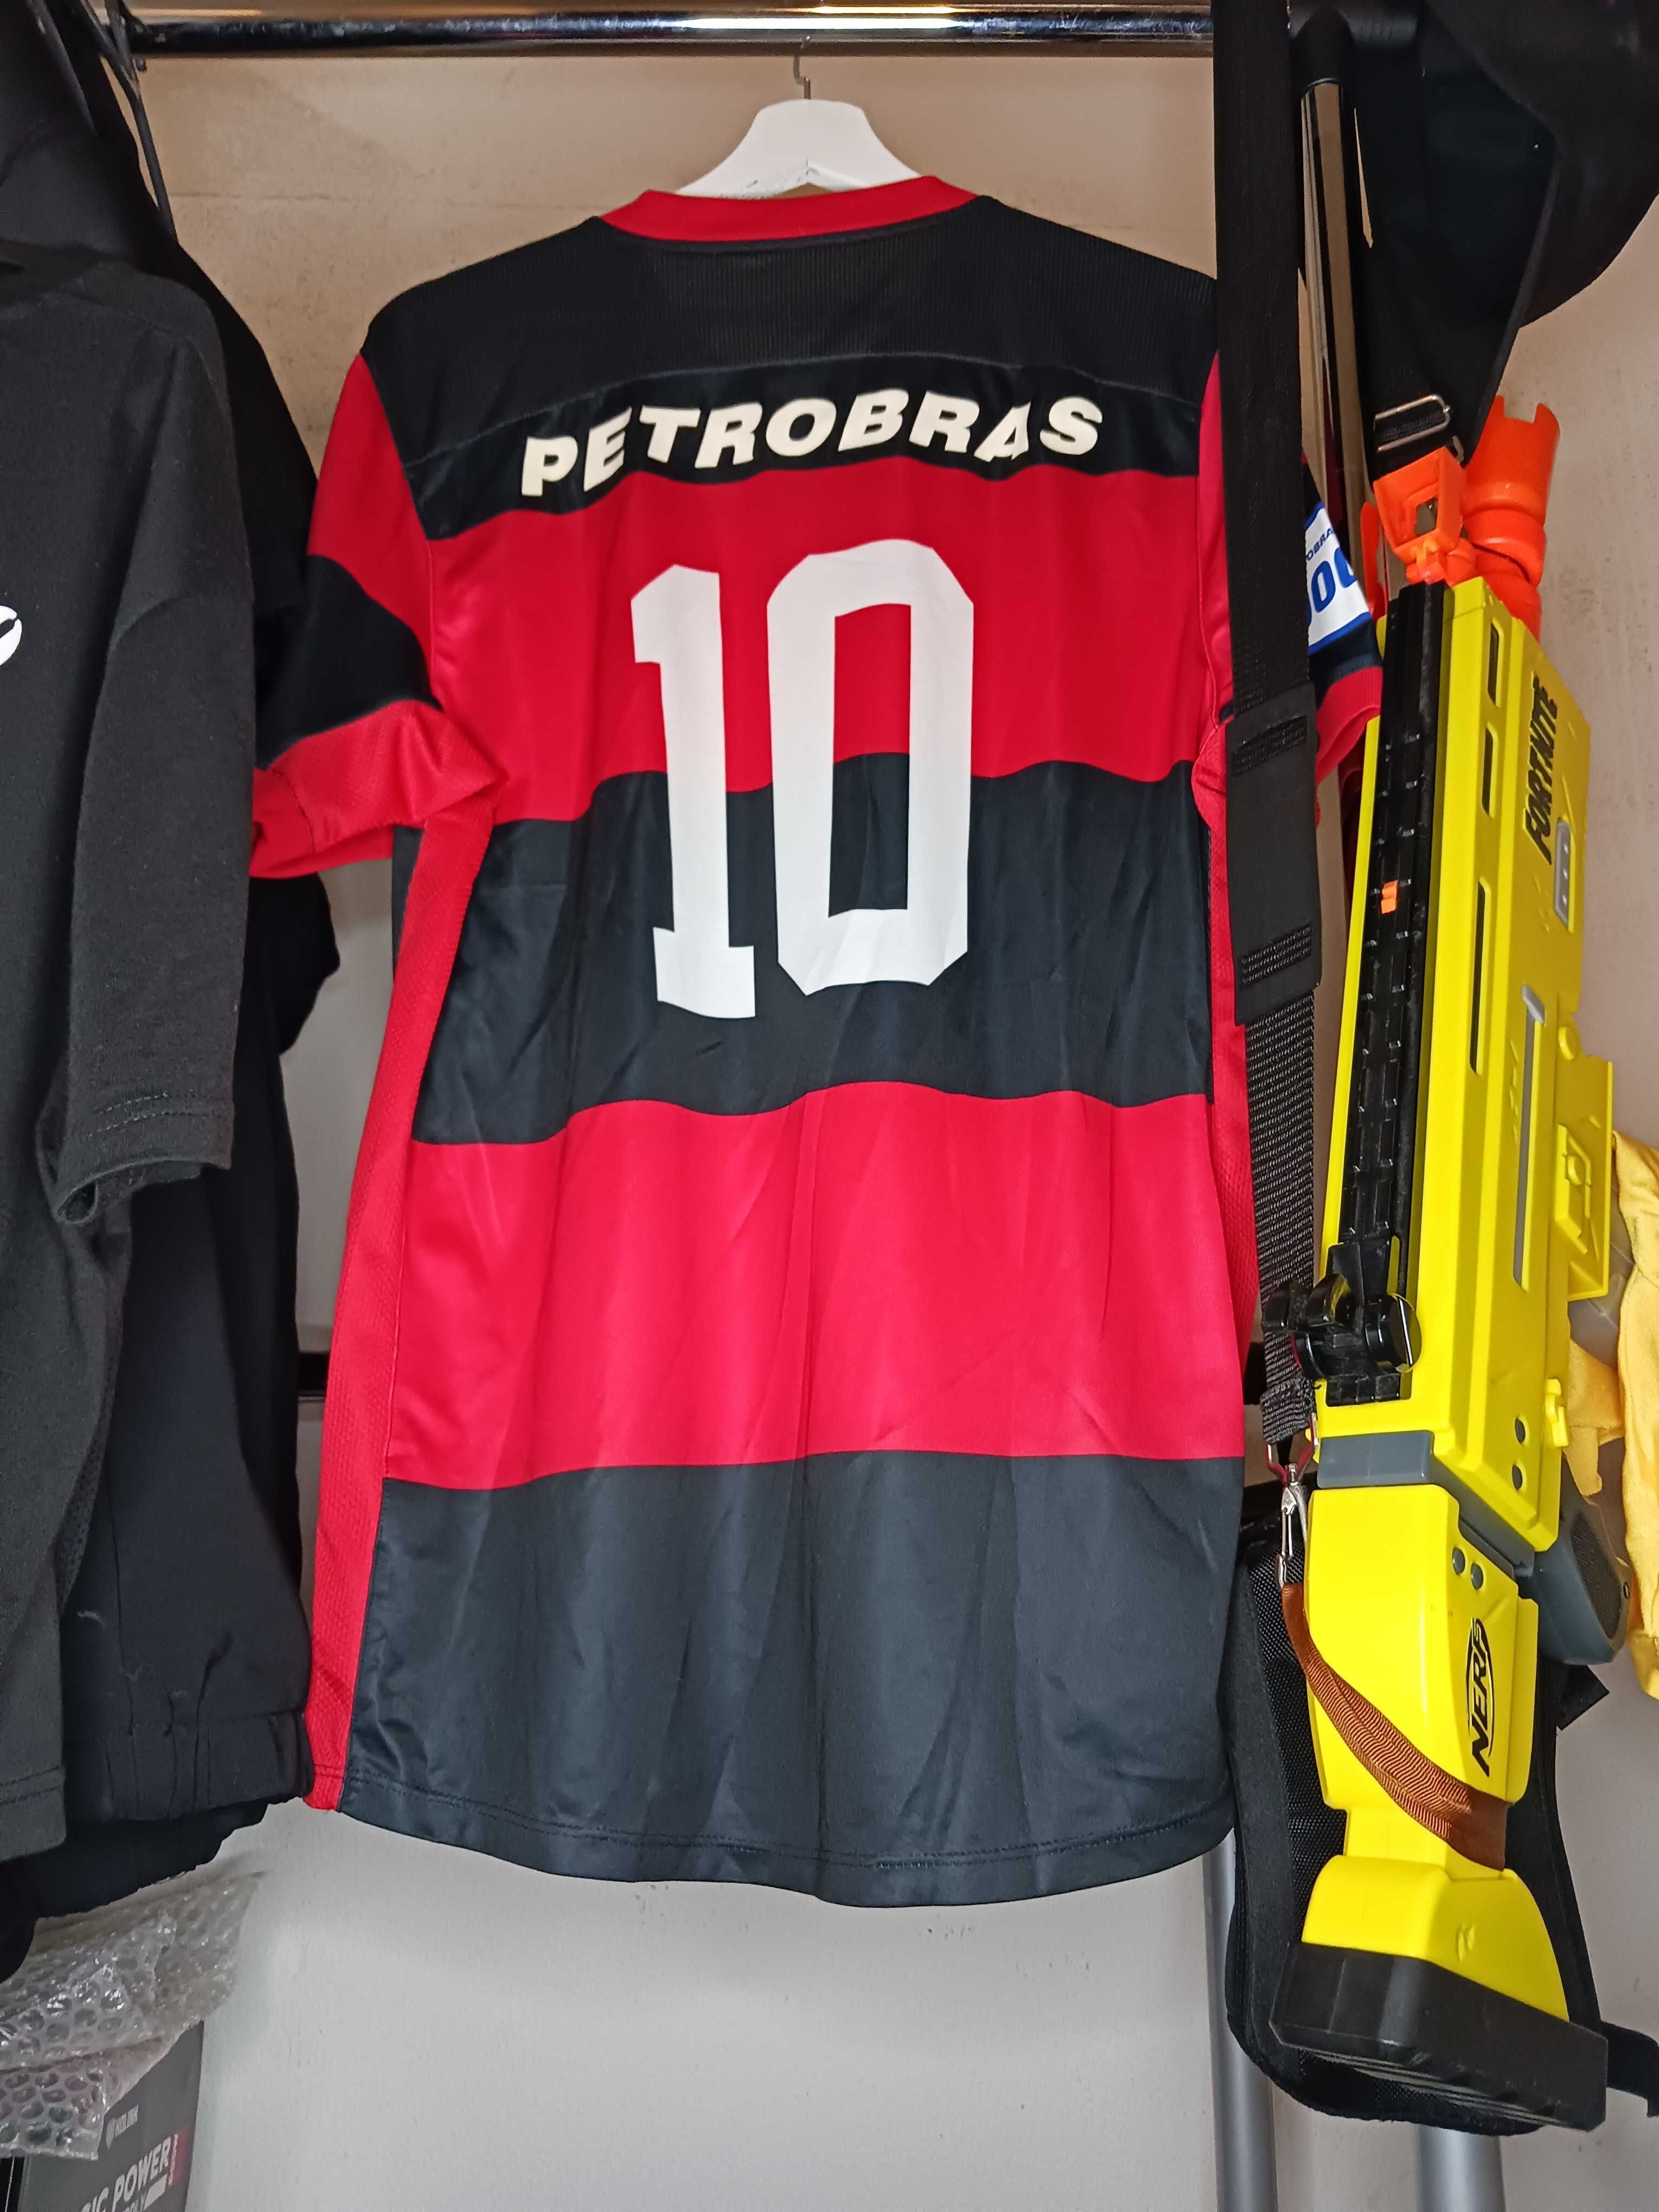 Camisas do flamengo (algumas foram usadas pela 1a equipa em jogo)